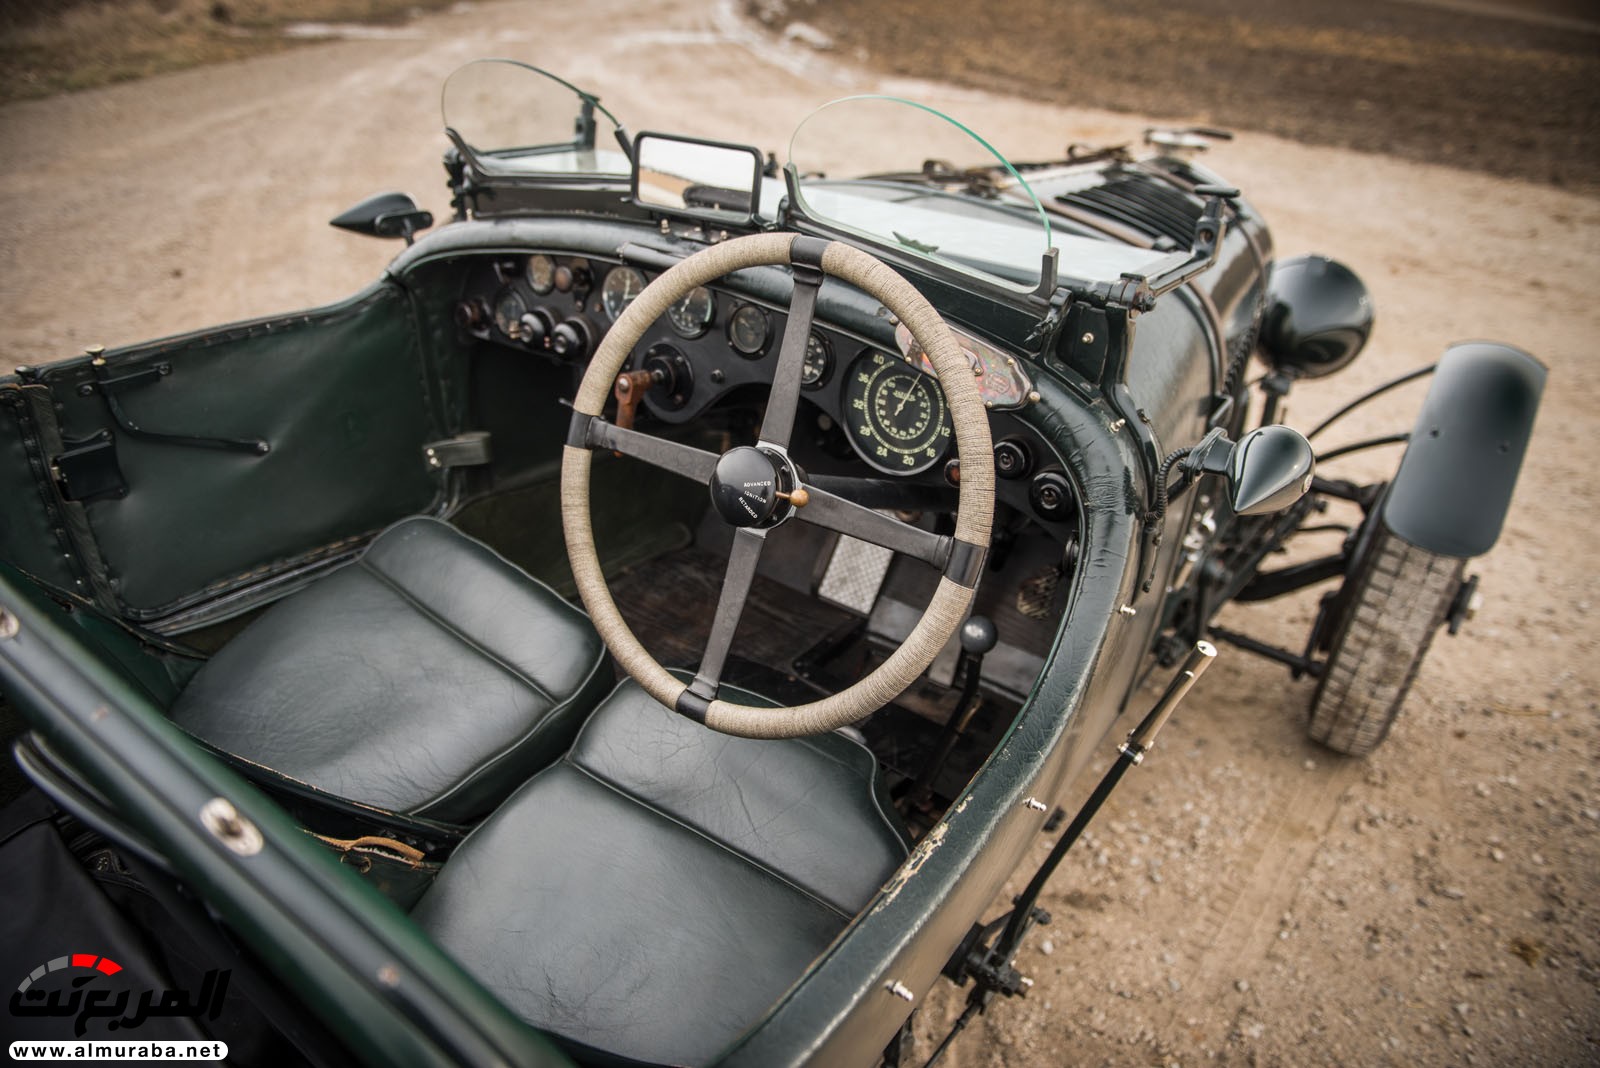 "بالصور" سيارة بنتلي موديل 1928 المشاركة في سباقات لومان تعرض بـ 7 مليون دولار في مزاد علني 88